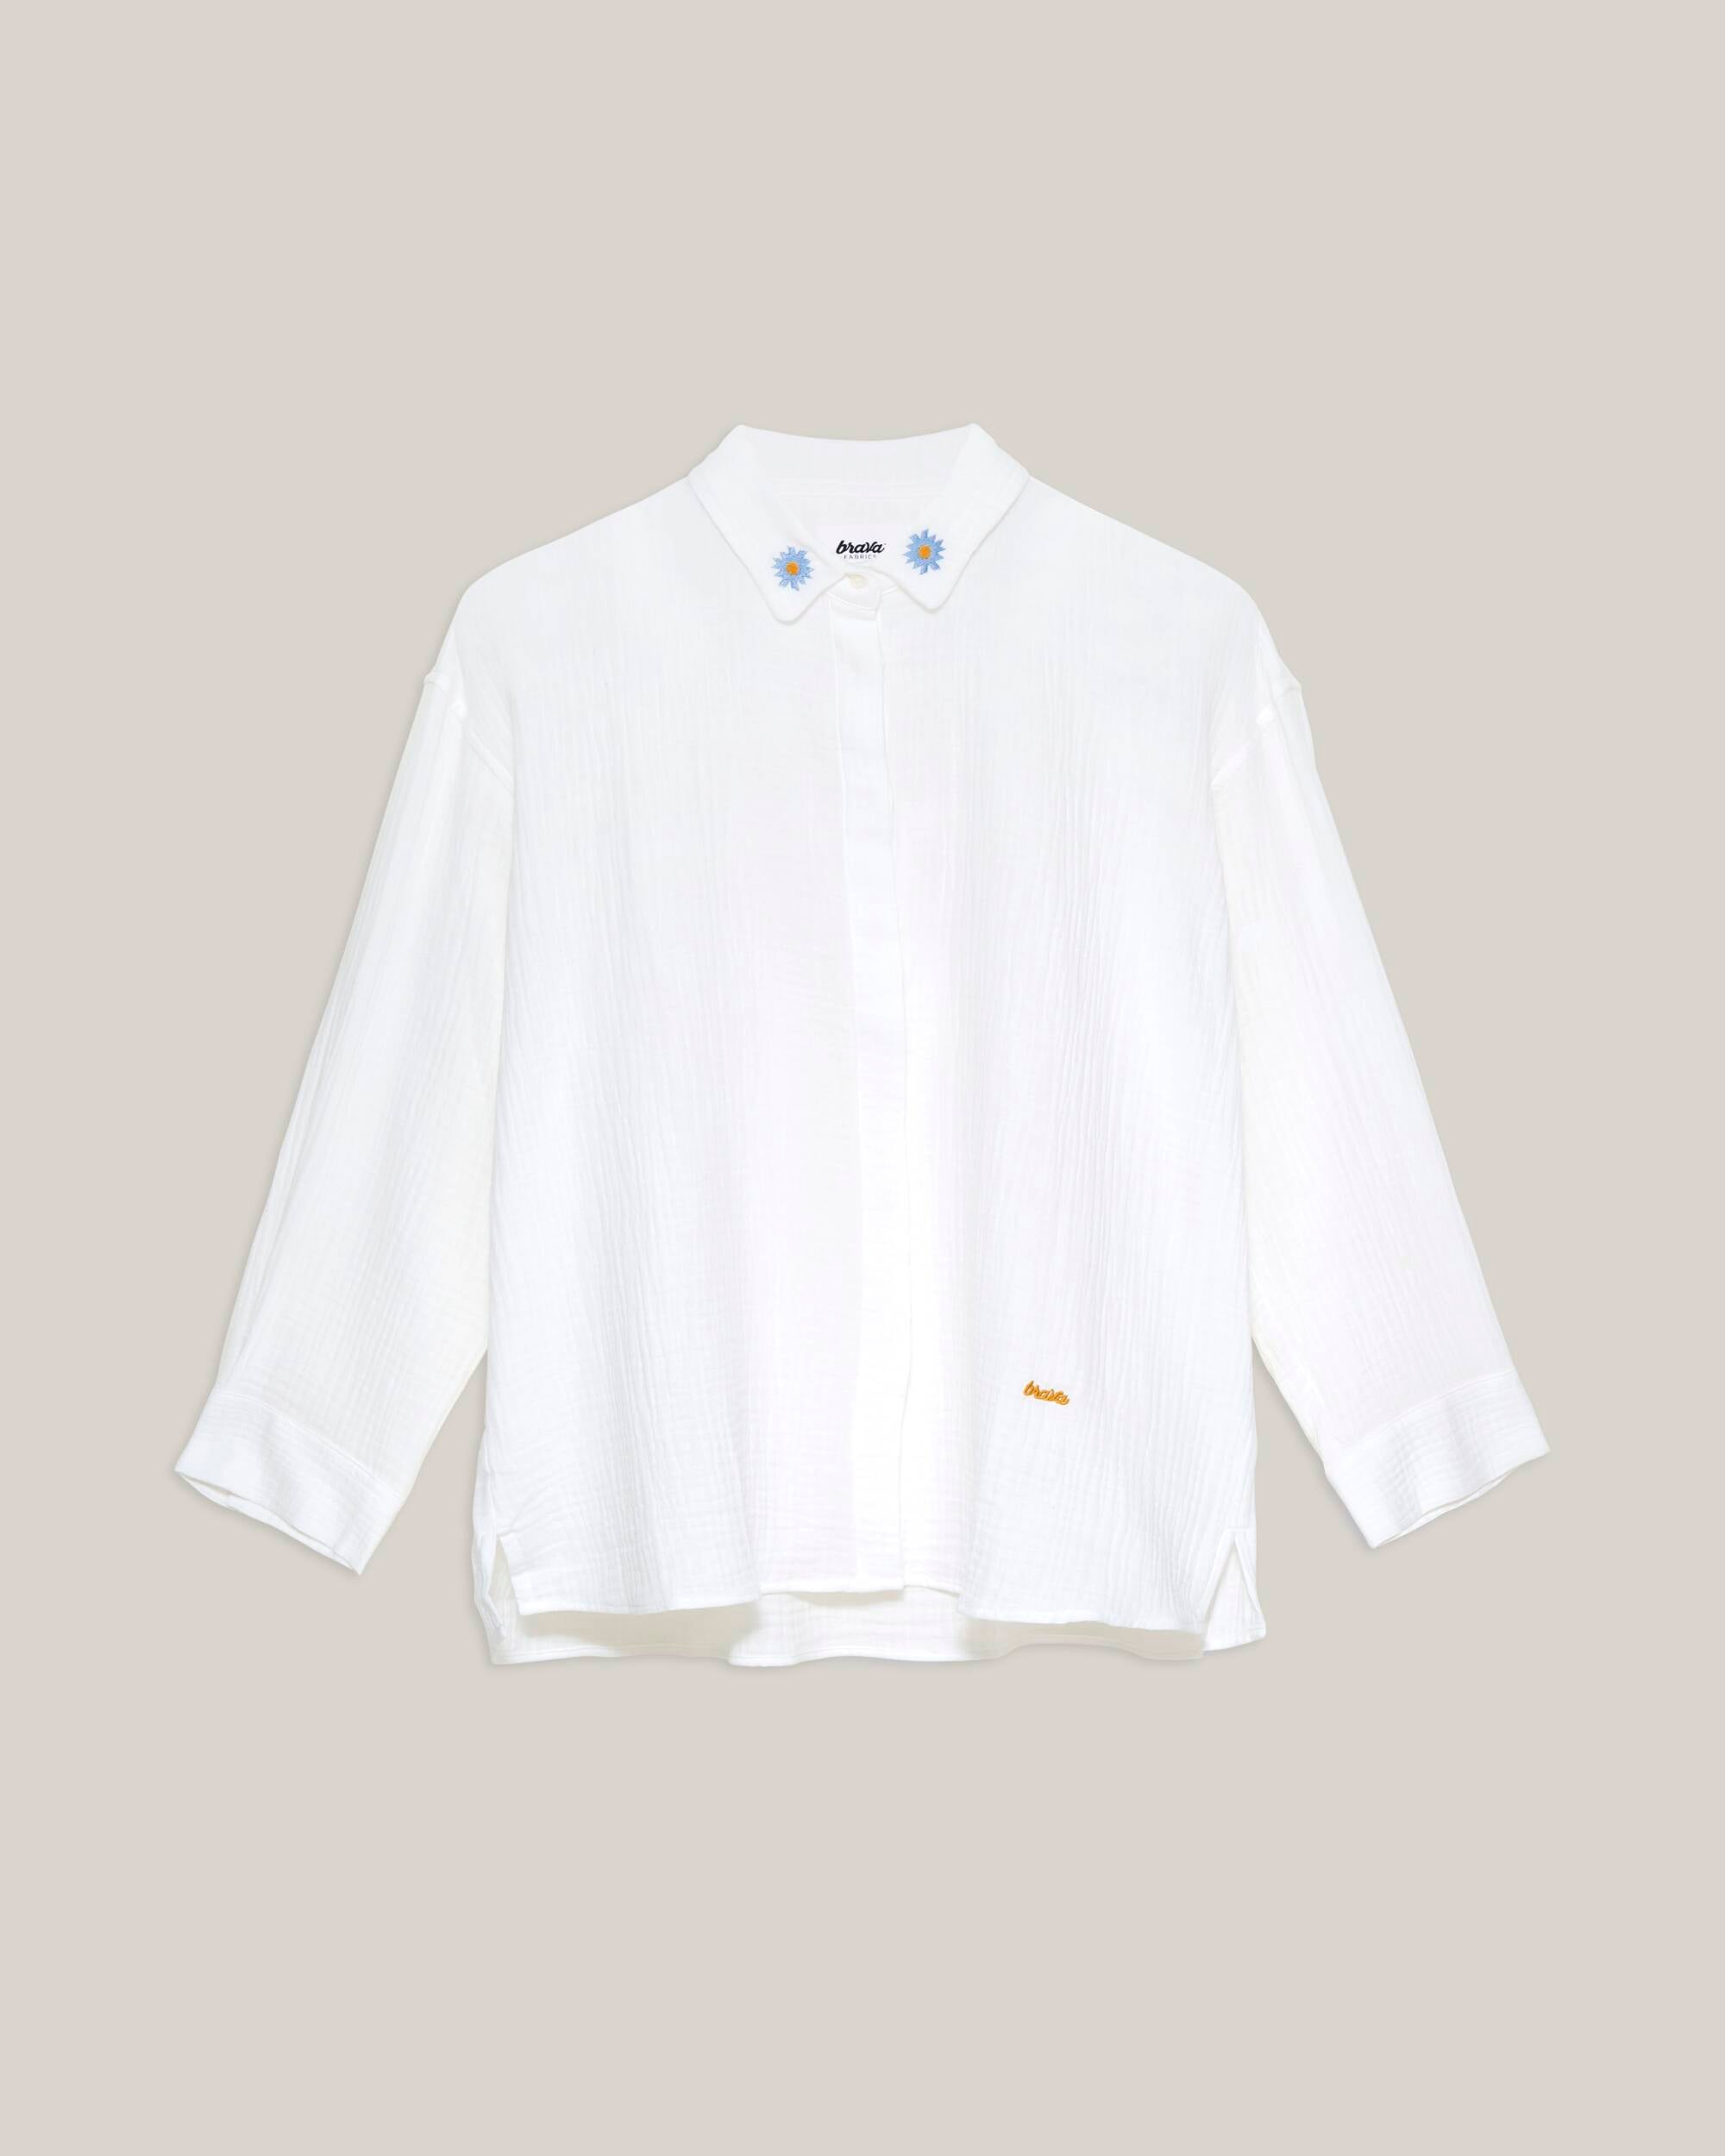 Weisse, langärmlige Bluse Pure White aus 100% Bio-Baumwolle von Brava Fabrics